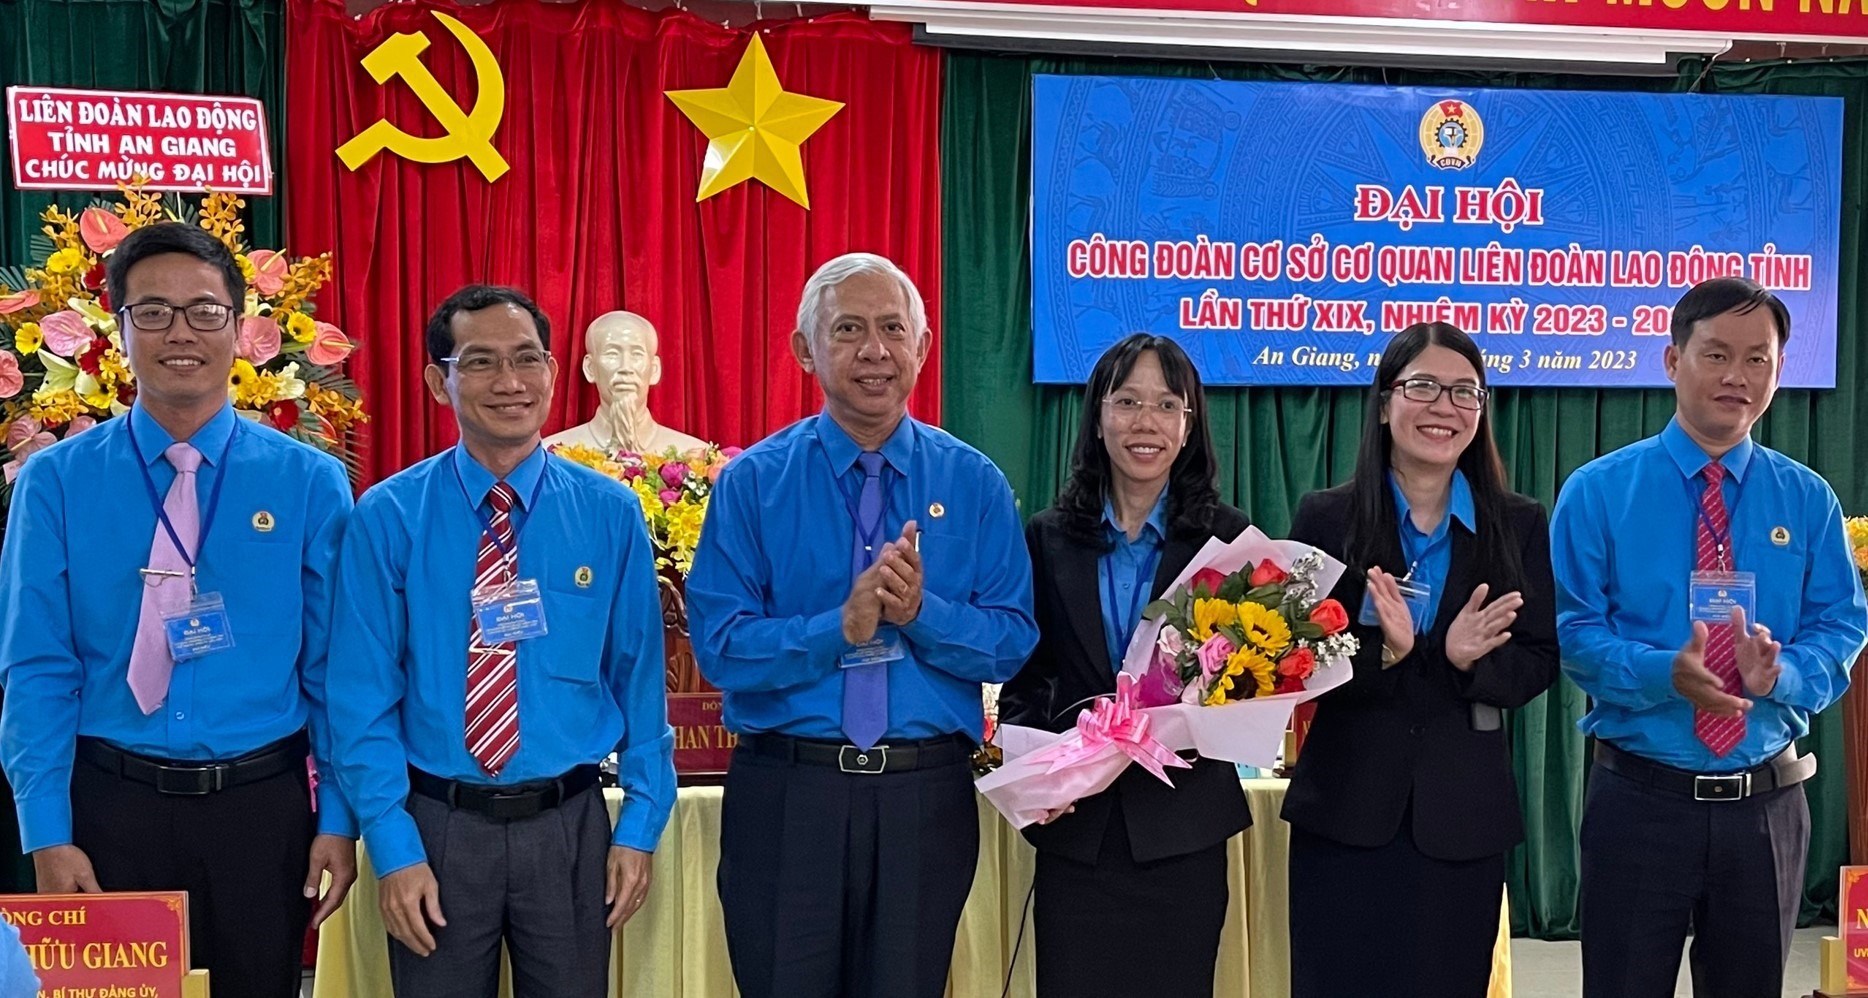 Chủ tịch LĐLĐ tỉnh An Giang Nguyễn Thiện Phú tặng hoa cho Ban chấp hành mới tại buổi ra mắt đại hội. Ảnh: Cẩm Tú